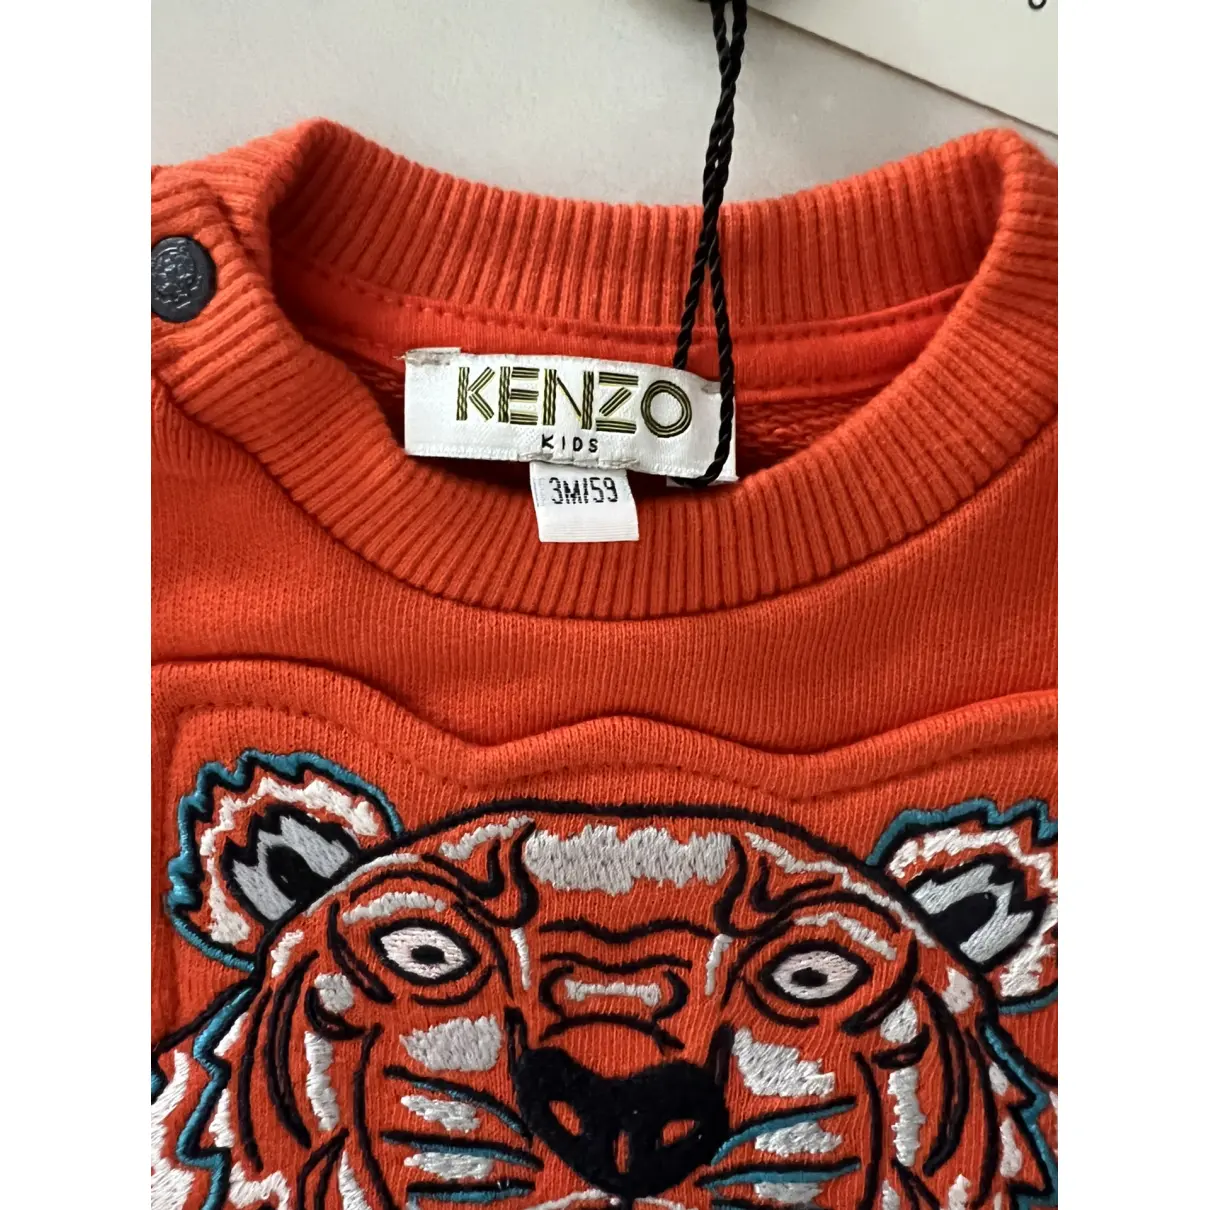 Buy Kenzo Knitwear online